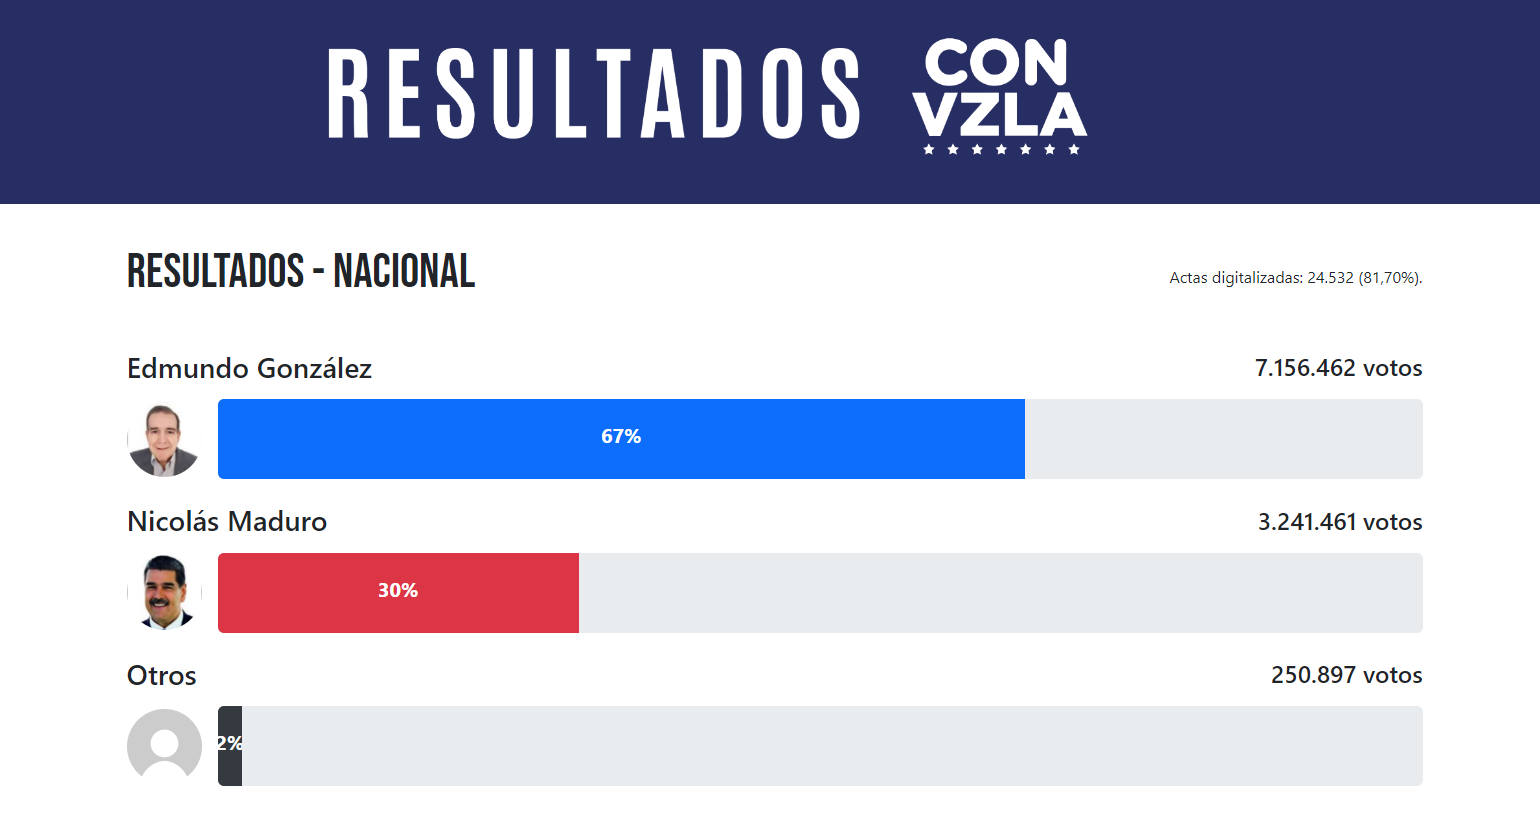 La actas de los votantes se contaron en la página web 'Resultados con Vzla' donde se evidencia que Edmundo González lidera las votaciones. Foto: Resultados con Vzla 